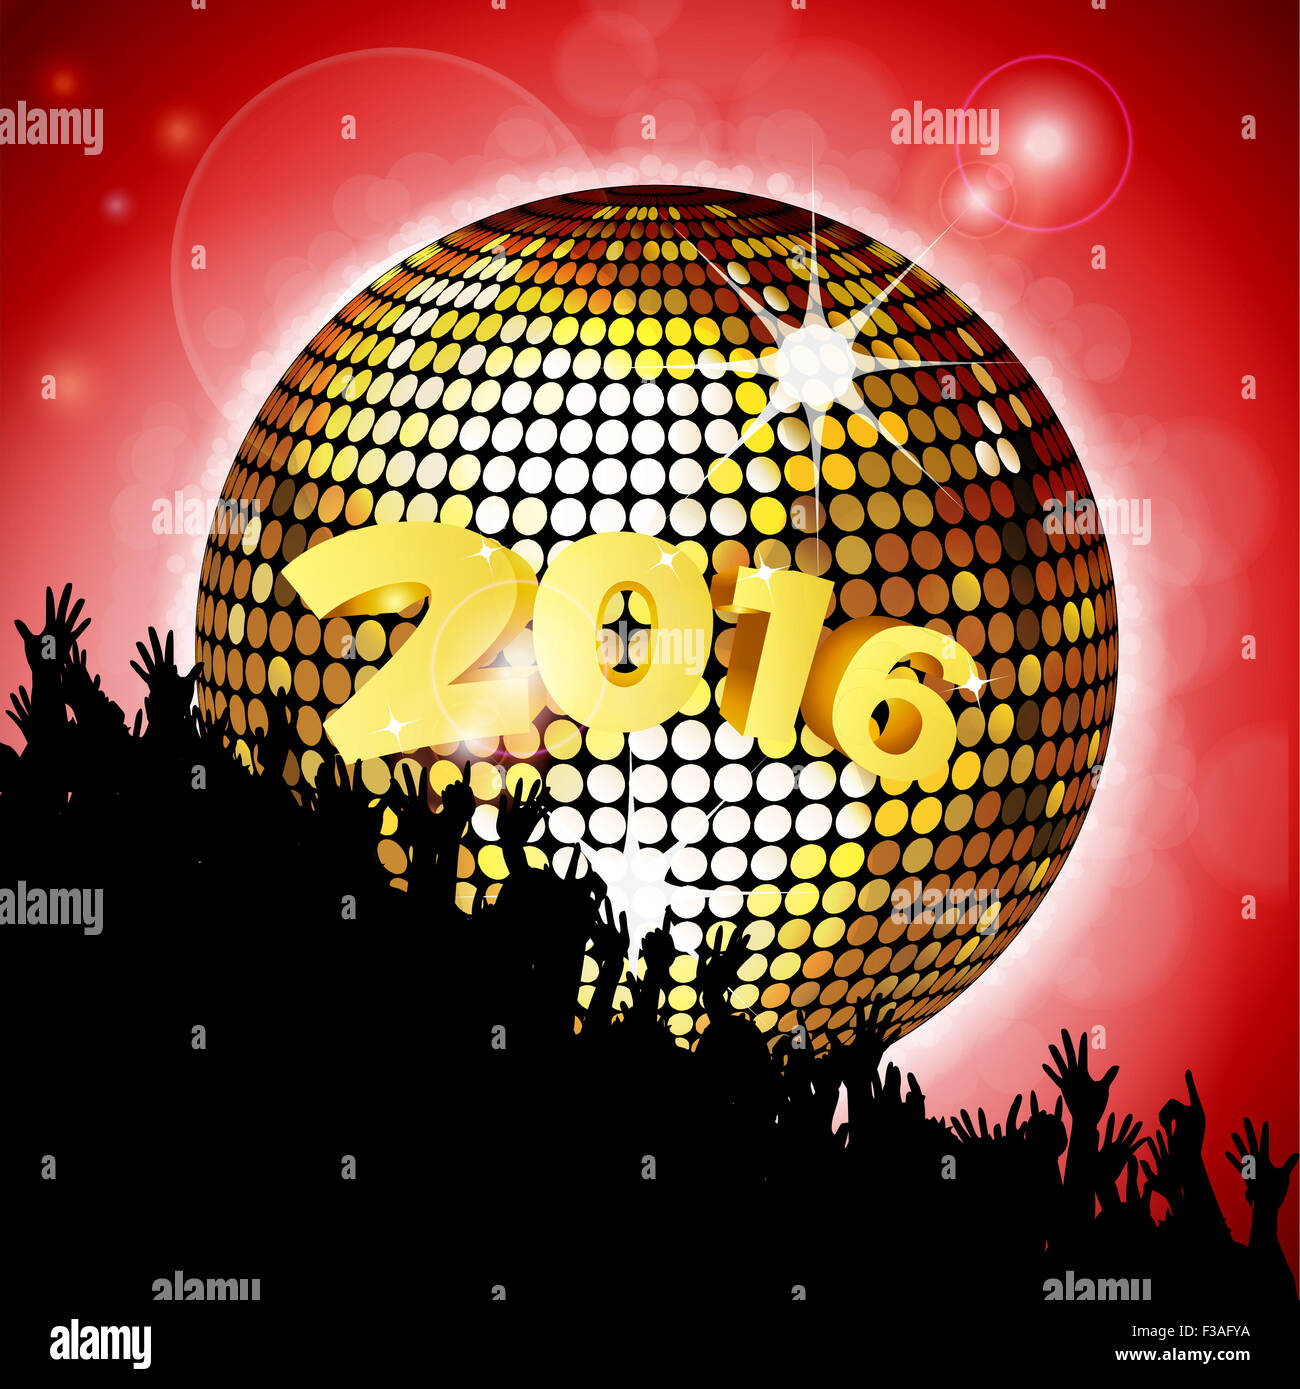 New Years Party 2016 avec foule et boule disco sur fond lumineux rouge Banque D'Images